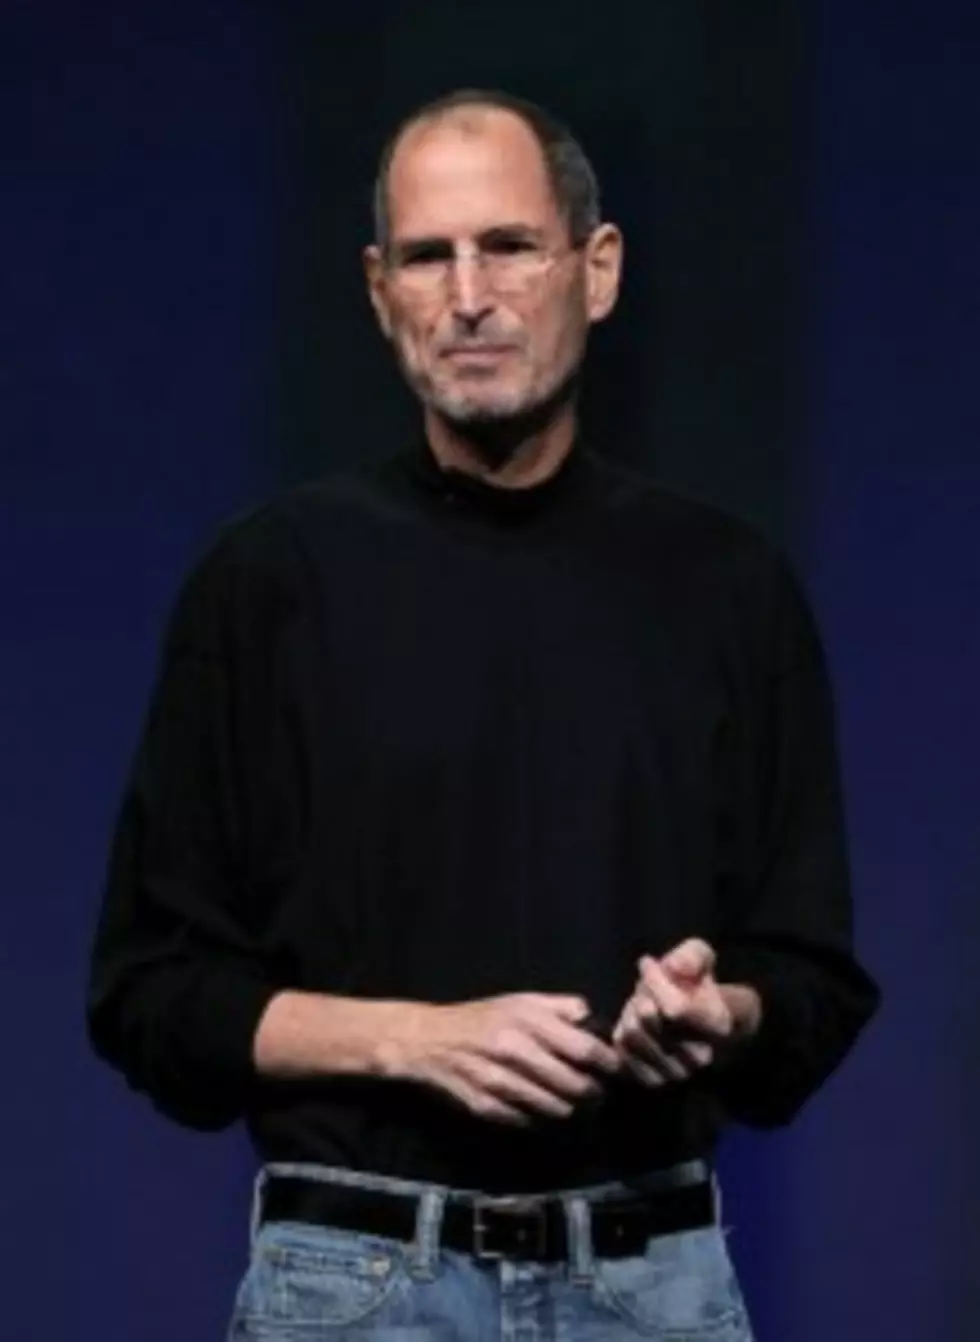 Former Apple CEO Steve Jobs Dies